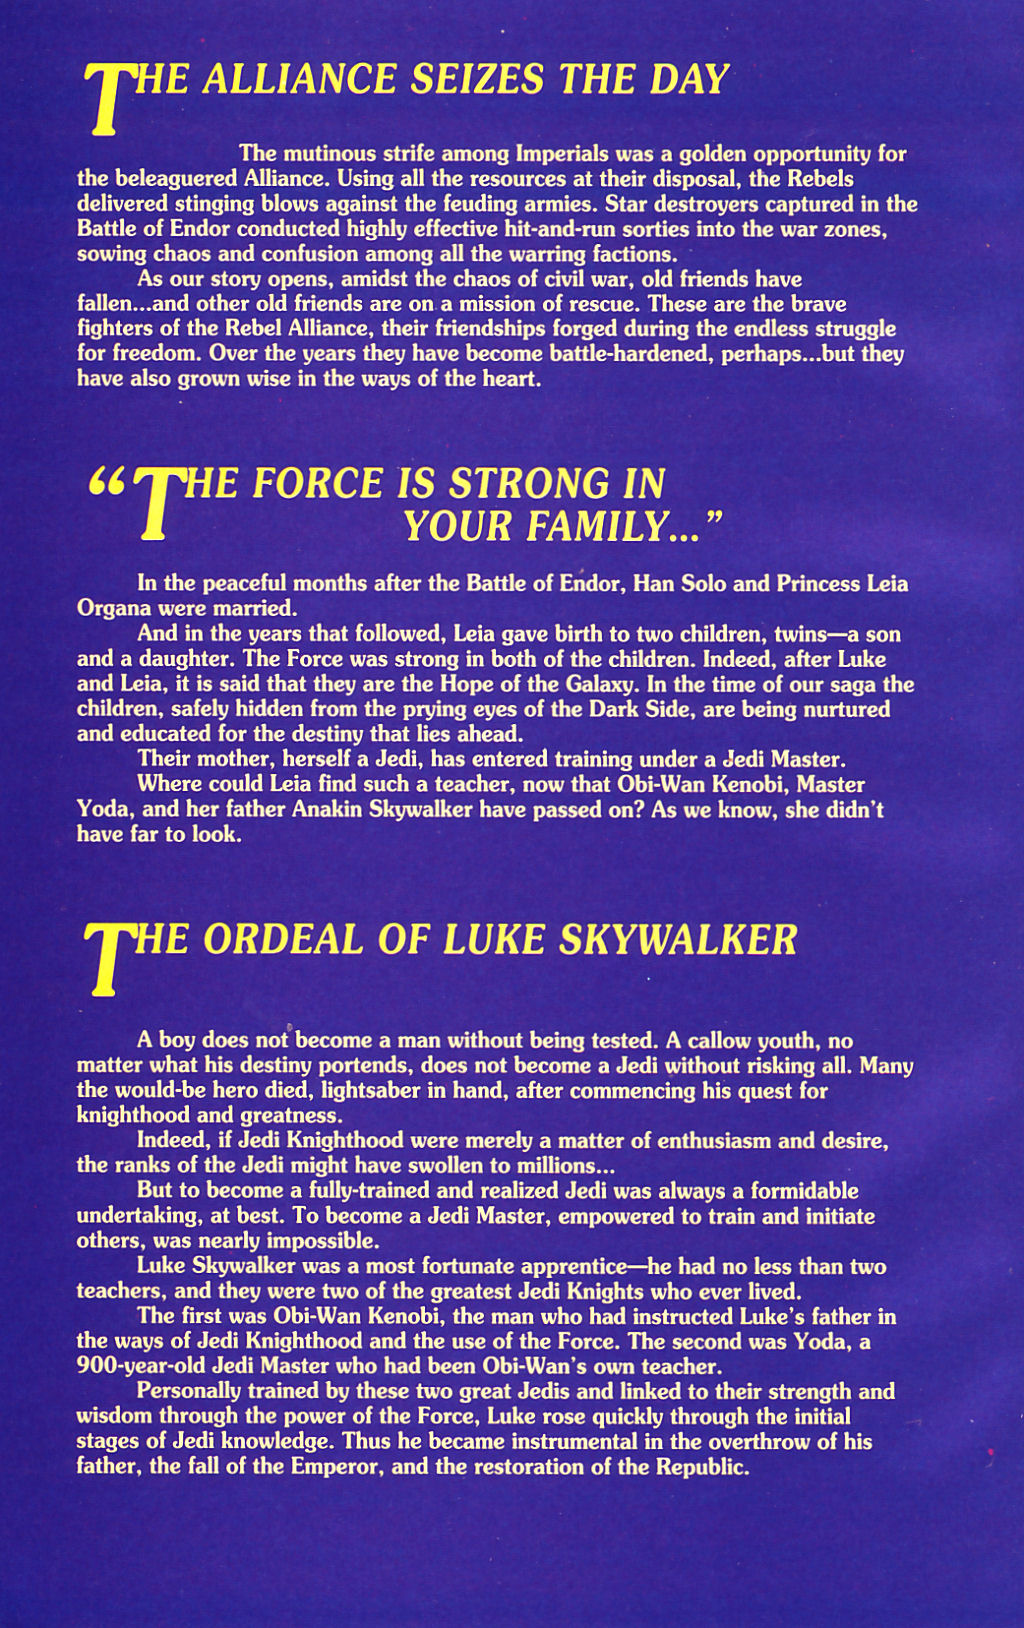 Read online Star Wars: Dark Empire comic -  Issue #1 - 30